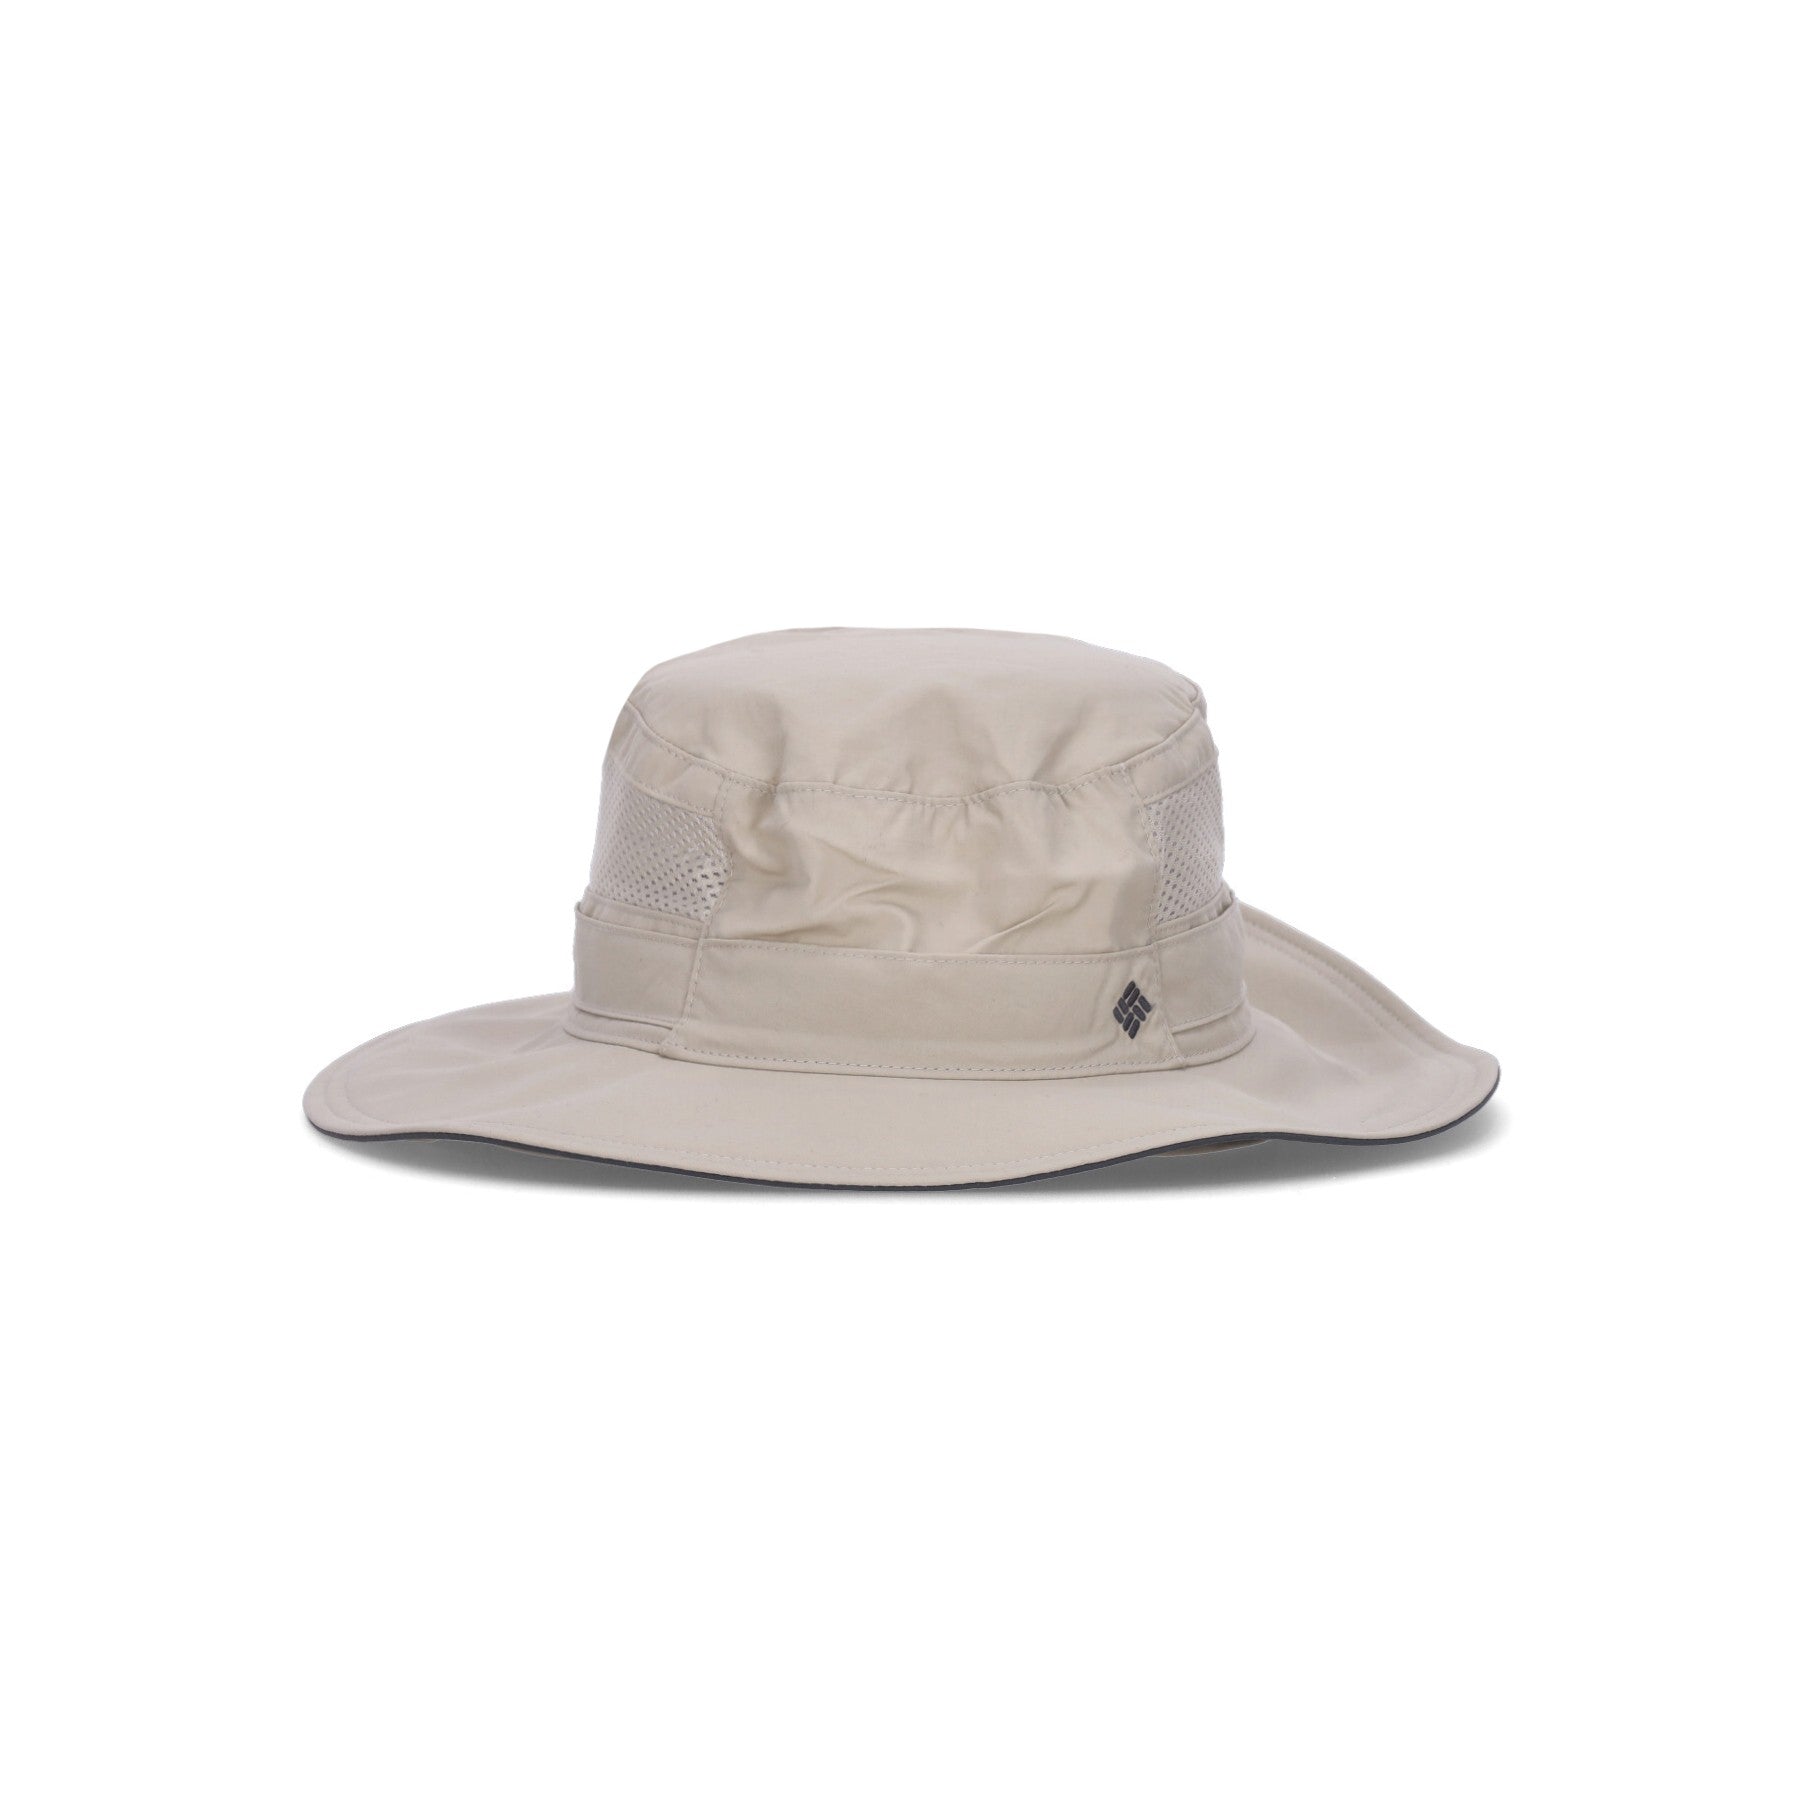 Bora Bora Booney Fossil Men's Wide Brim Hat